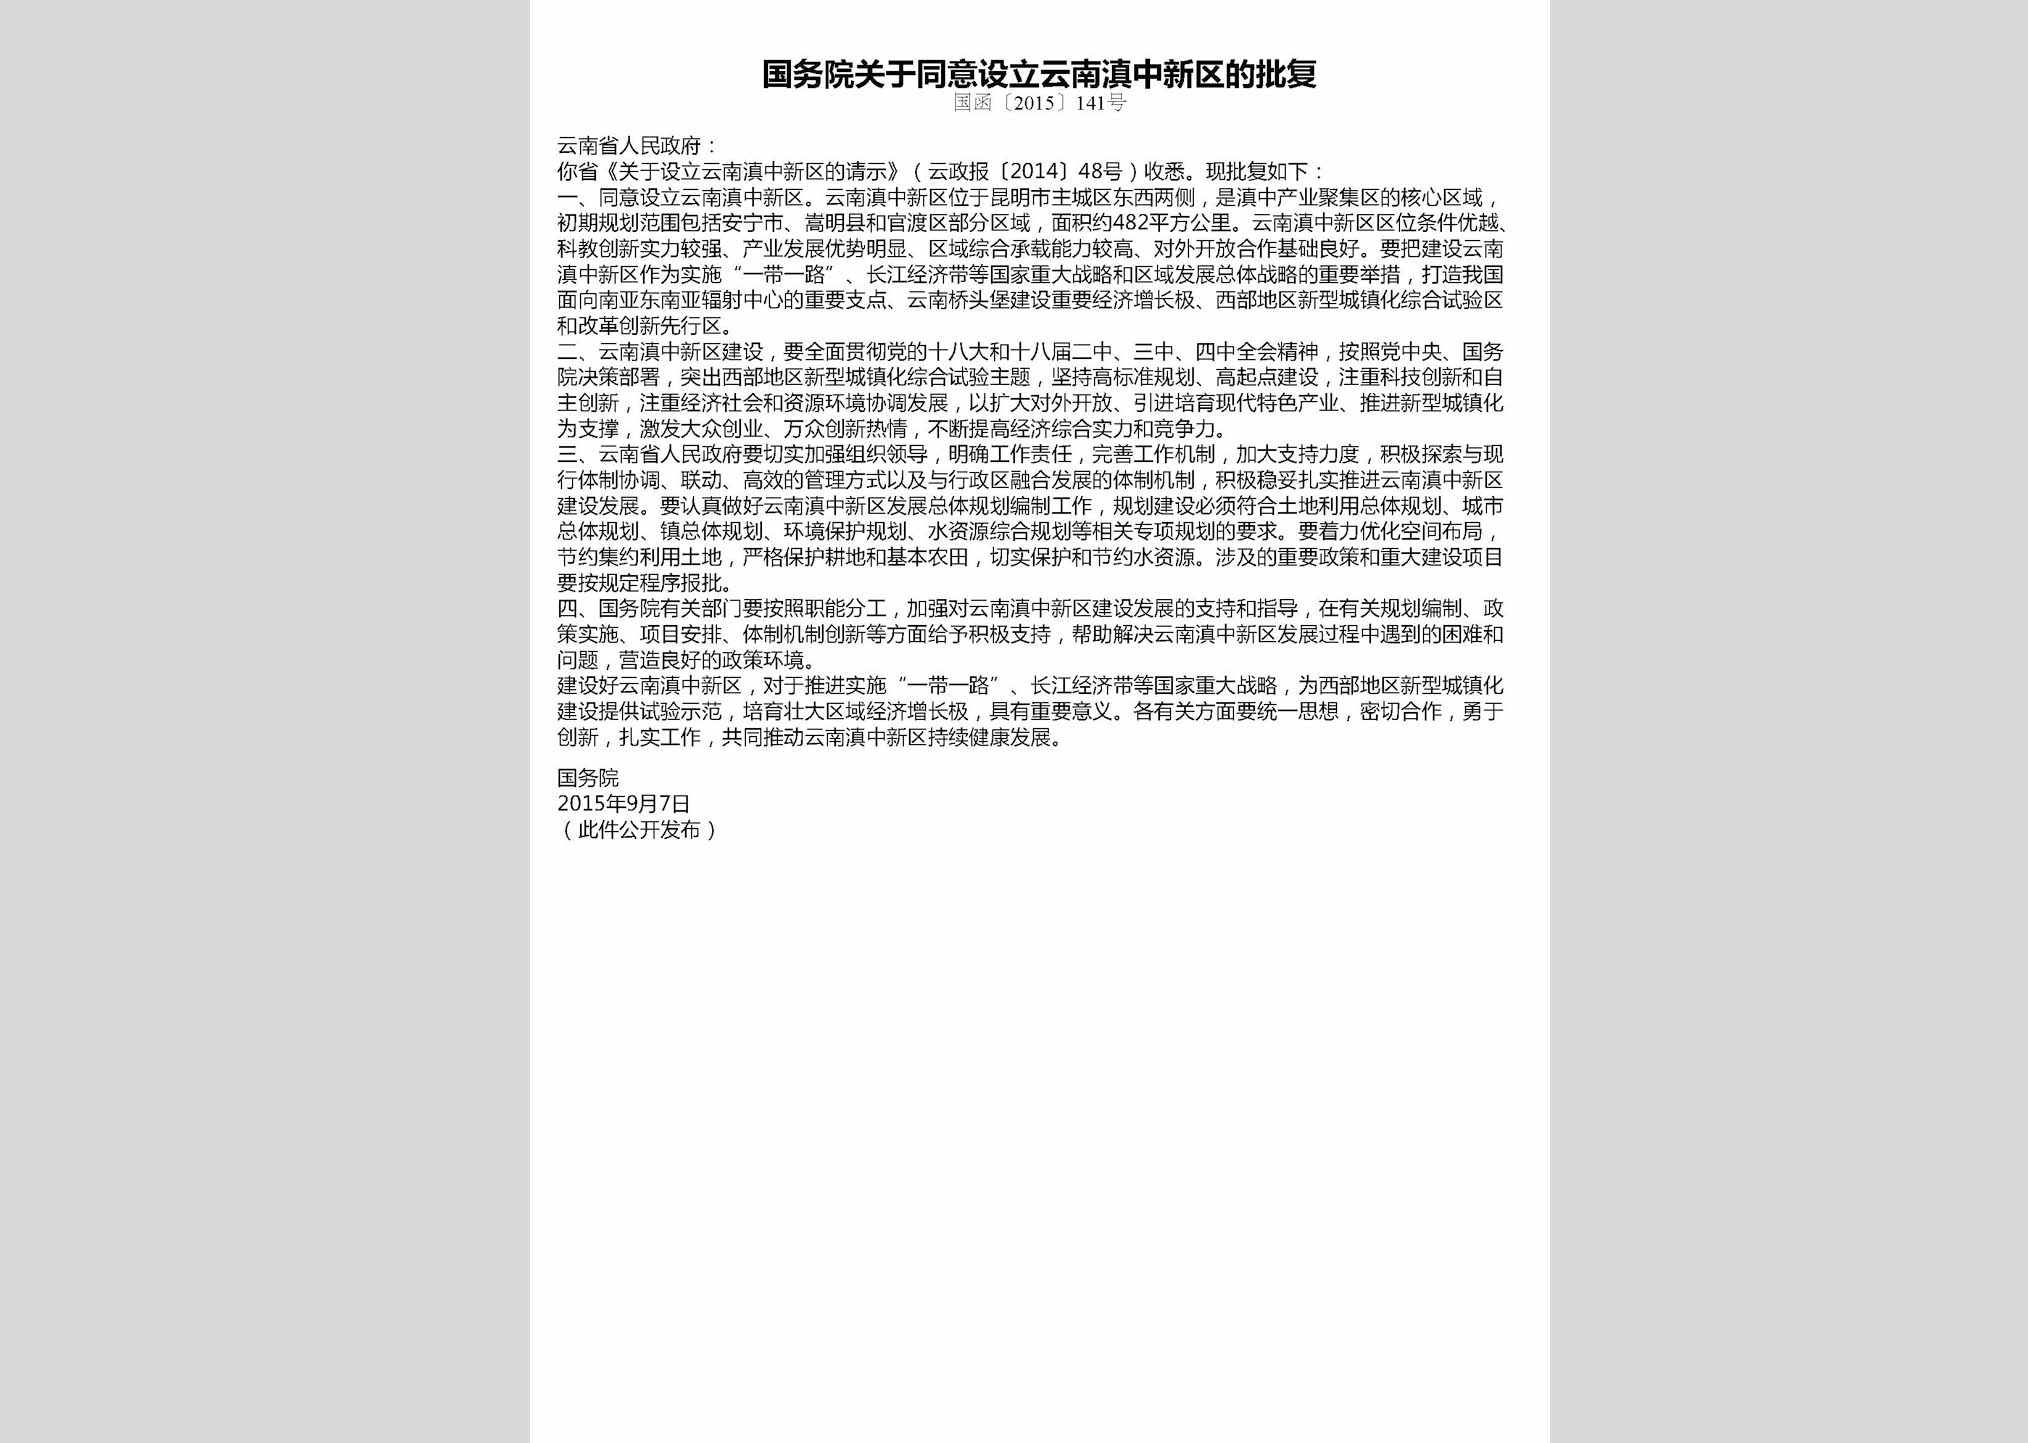 国函[2015]141号：国务院关于同意设立云南滇中新区的批复